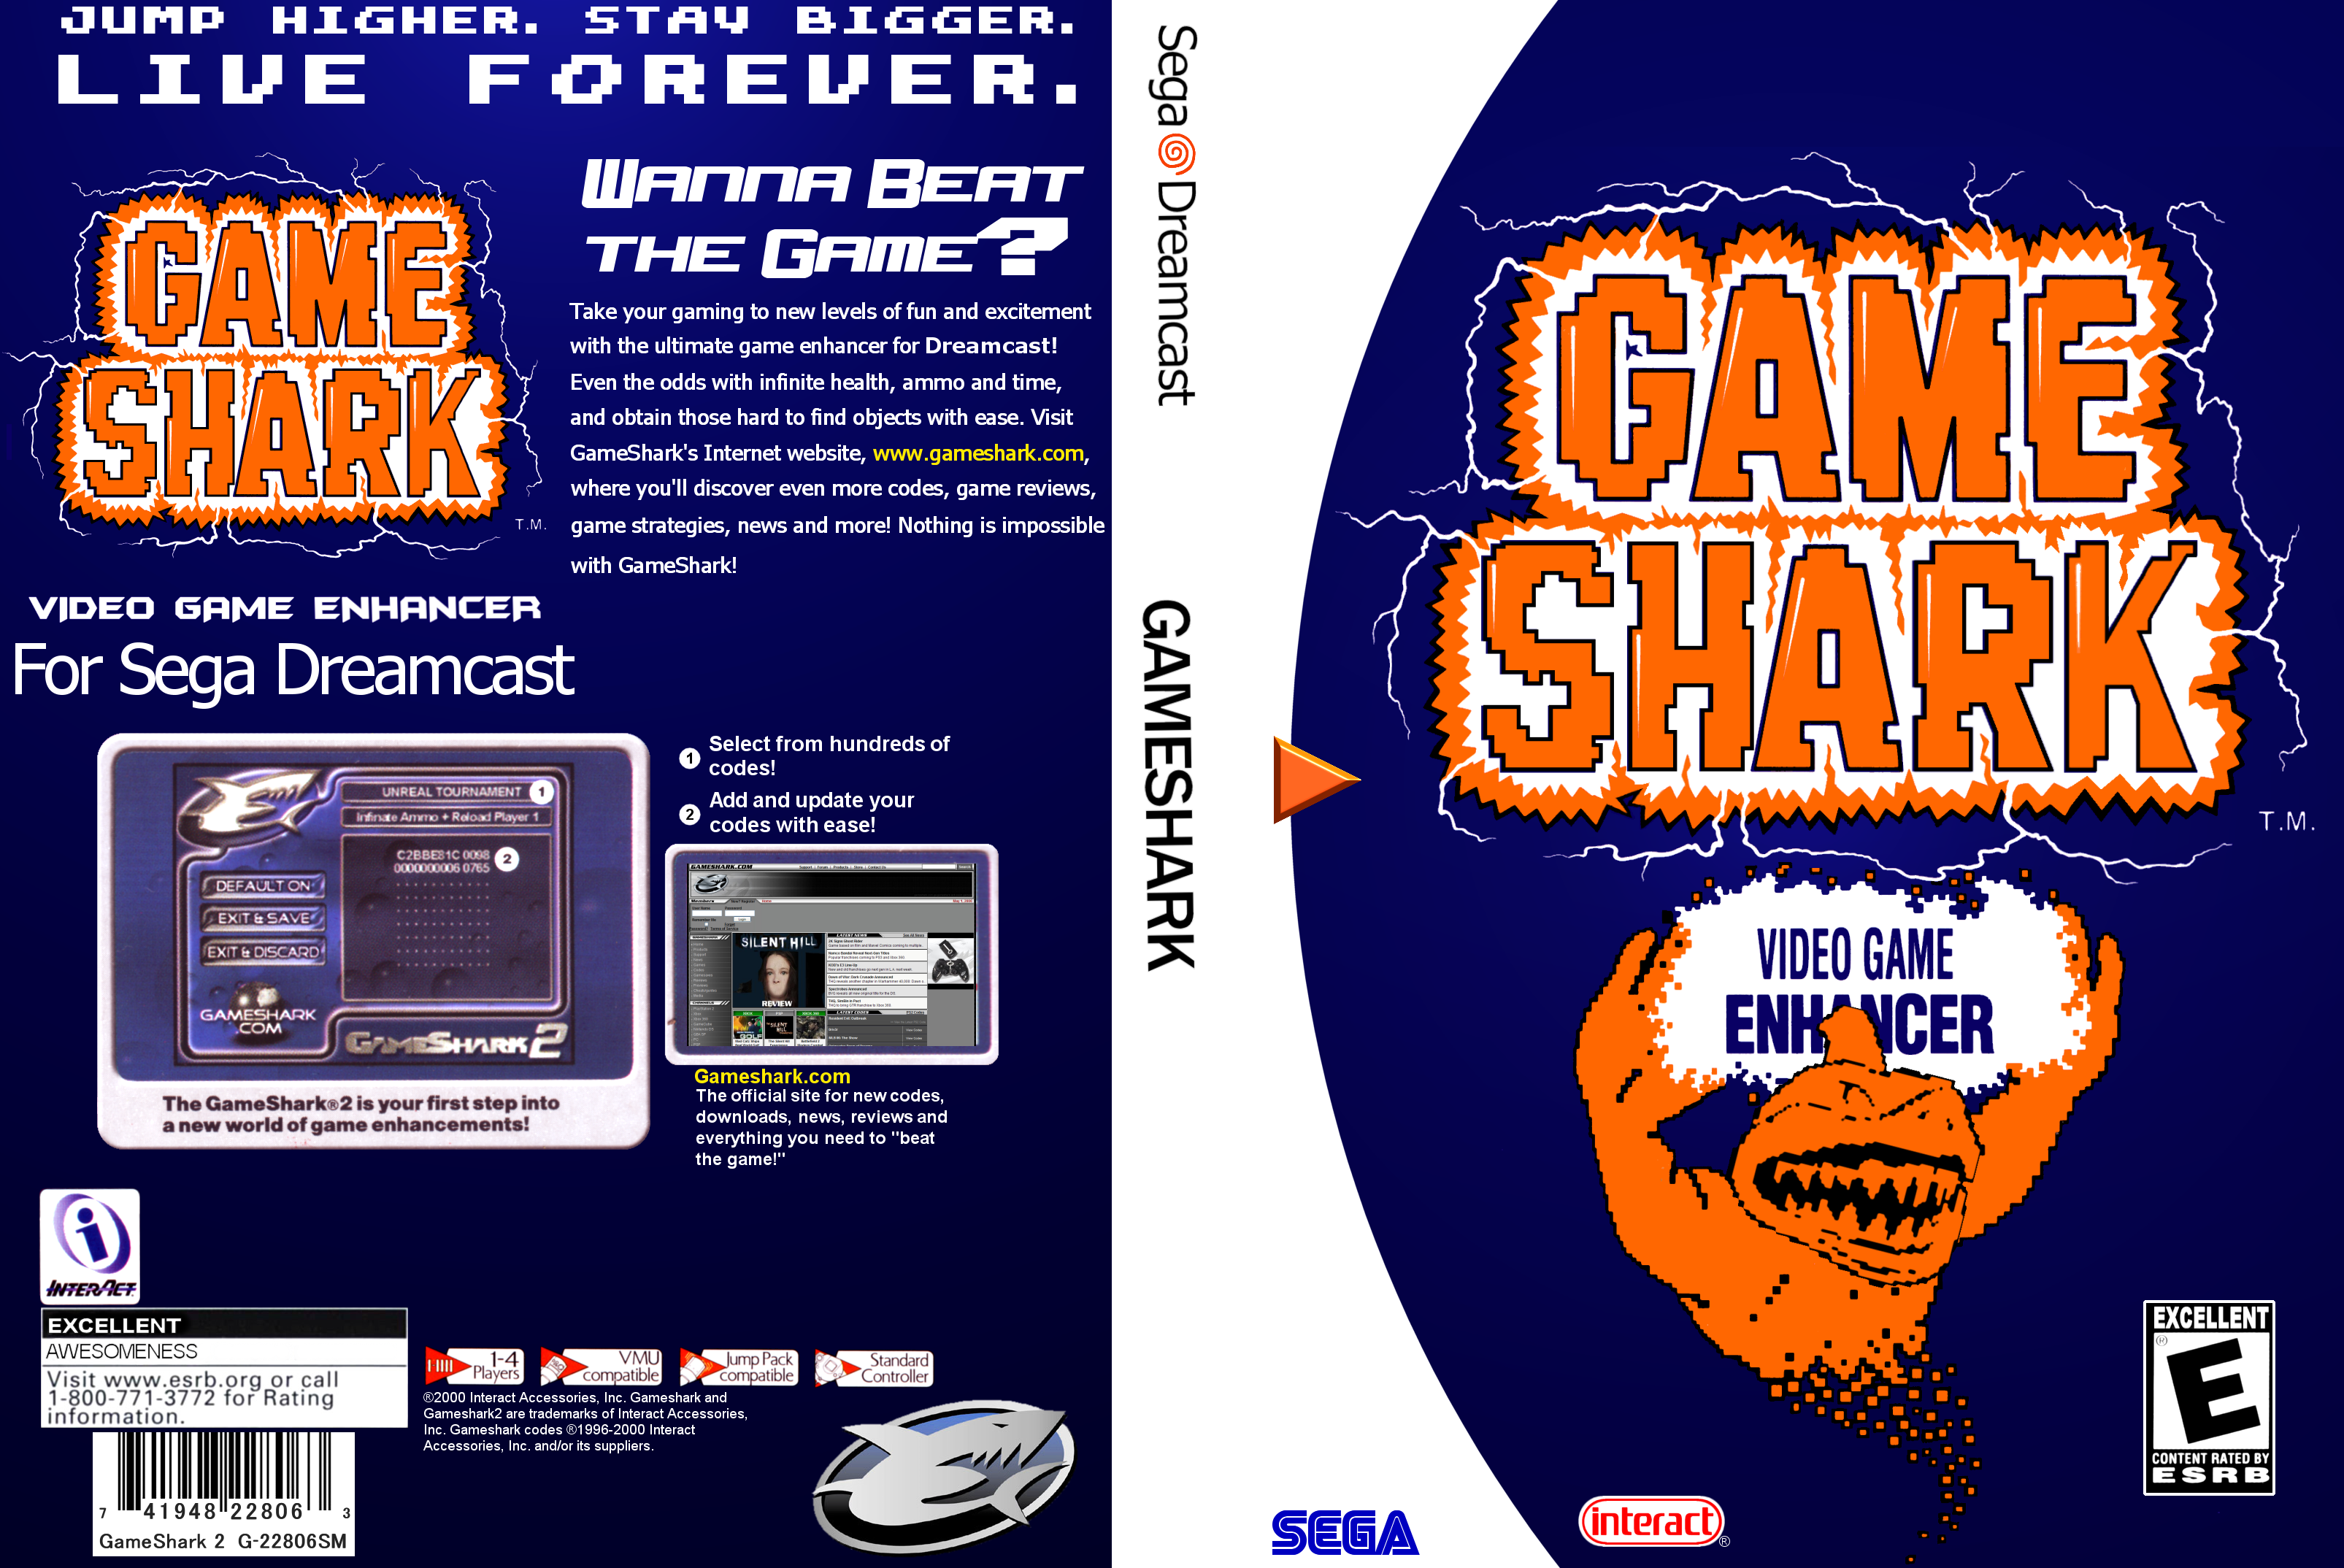 Dreamcast Gameshark DVD case insert